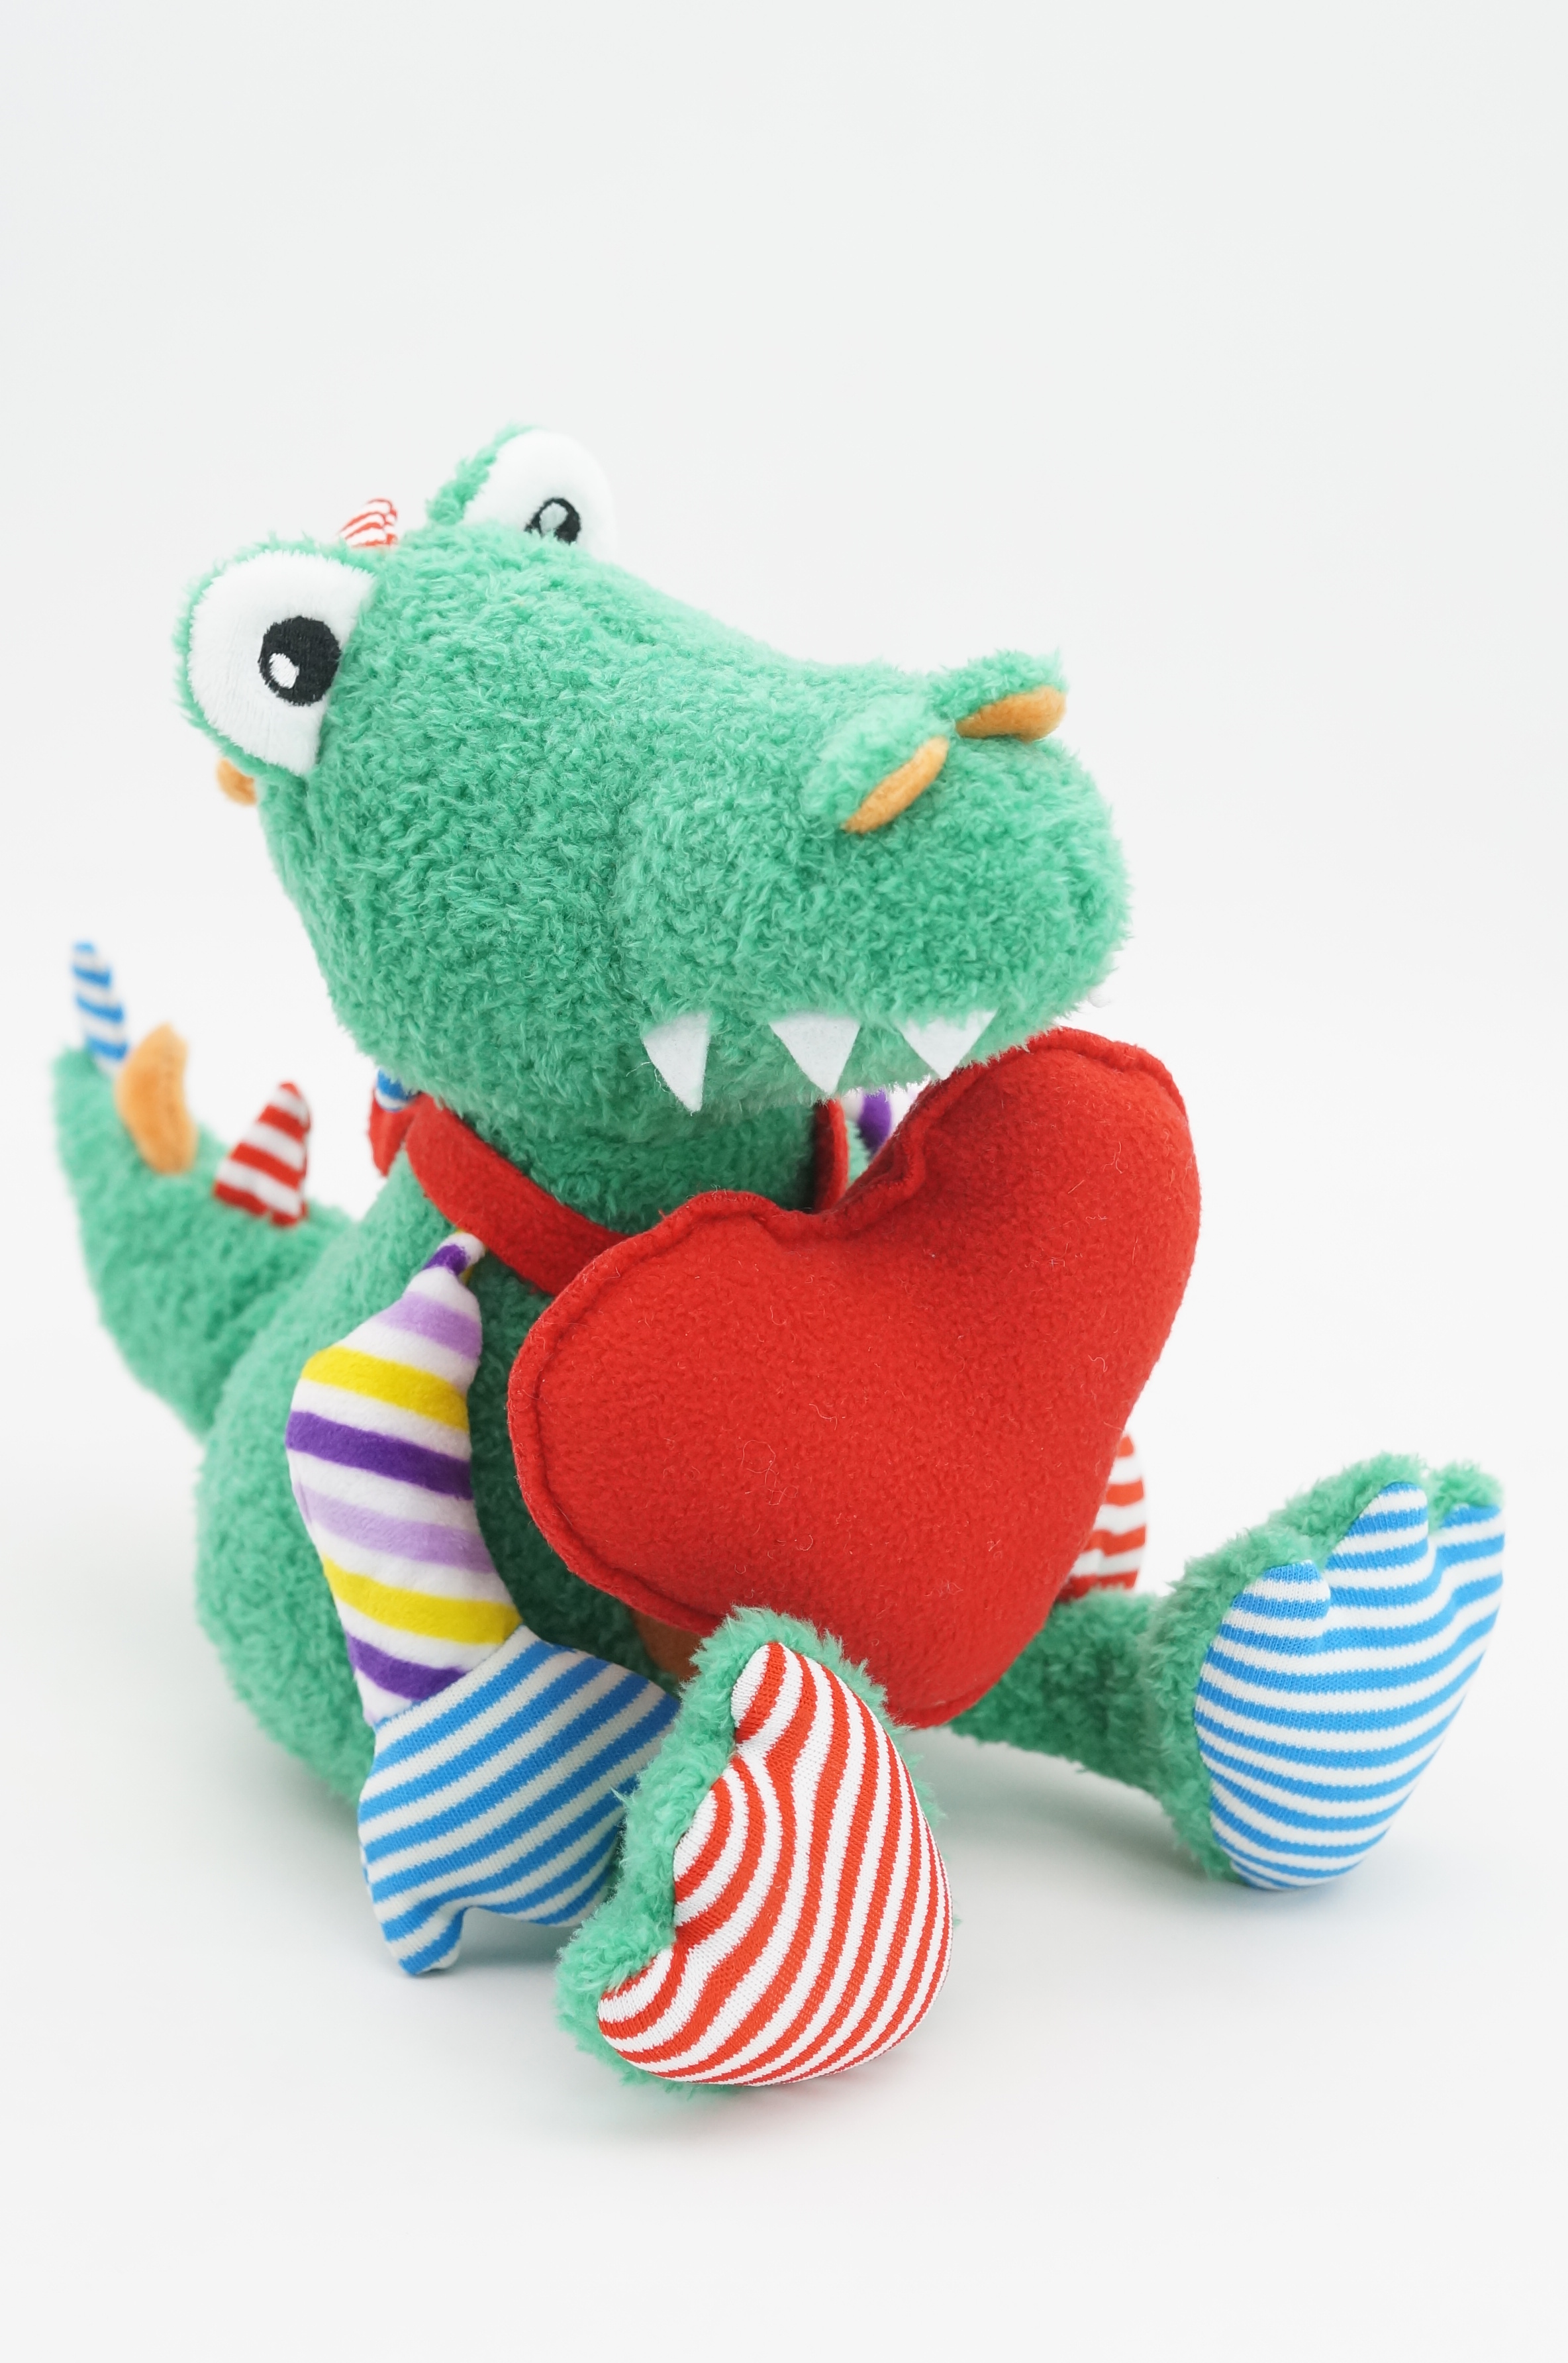 Мягкая игрушка Unaky Soft Toy Крокодил Роб 20 см зеленый; бежевый; красный мягкая игрушка unaky soft toy дракончик роб 20 см 0888320 зеленый белый красный голубой